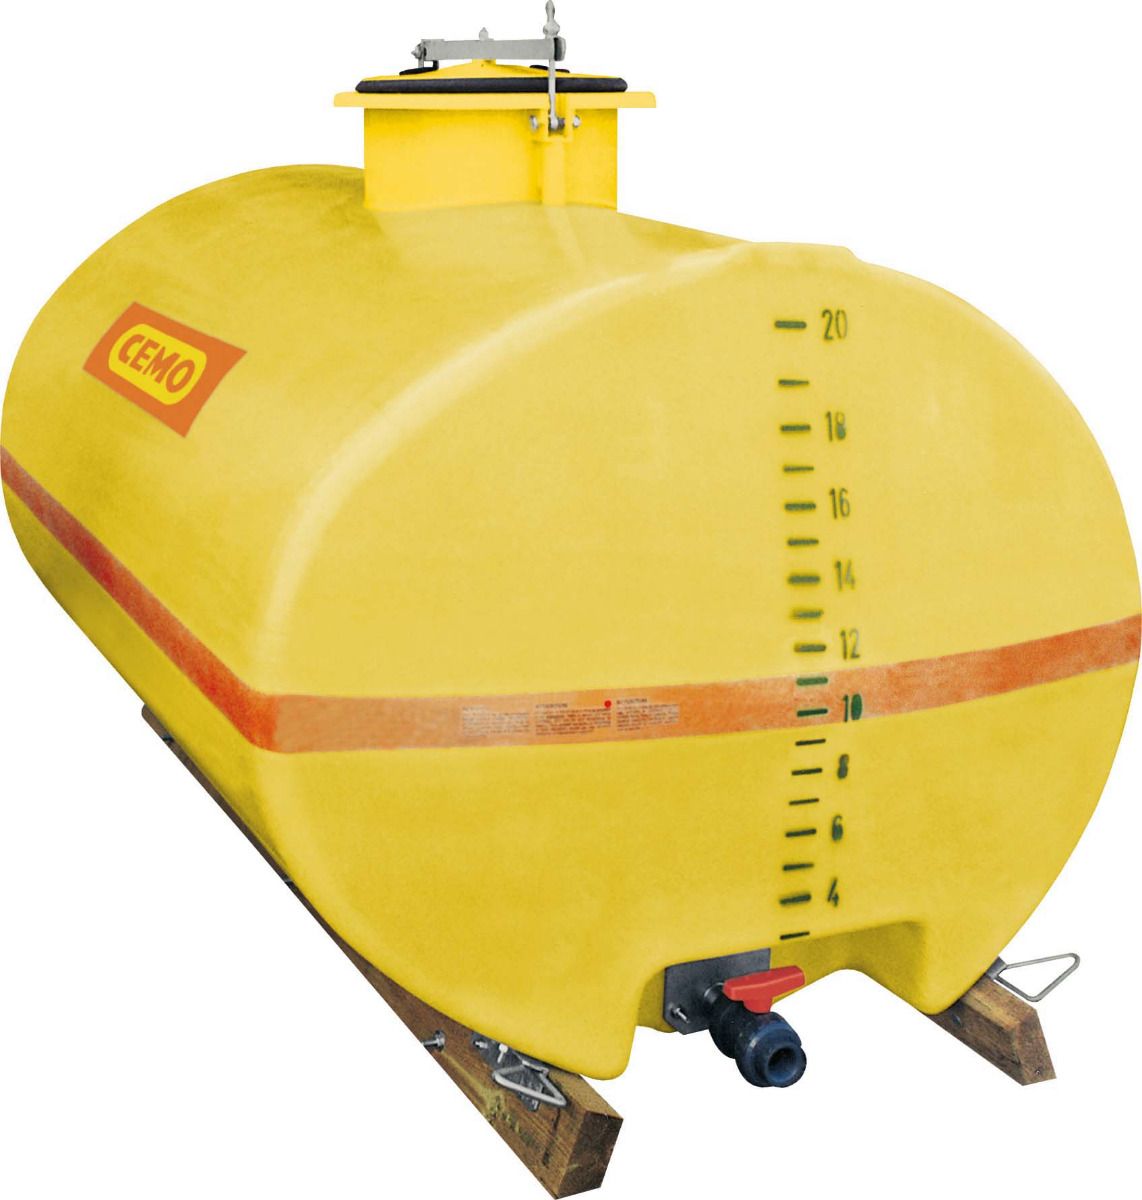 Oval tank av GRP, kort, höghastighet med fördjupning, kupol centrum, 2000 liter